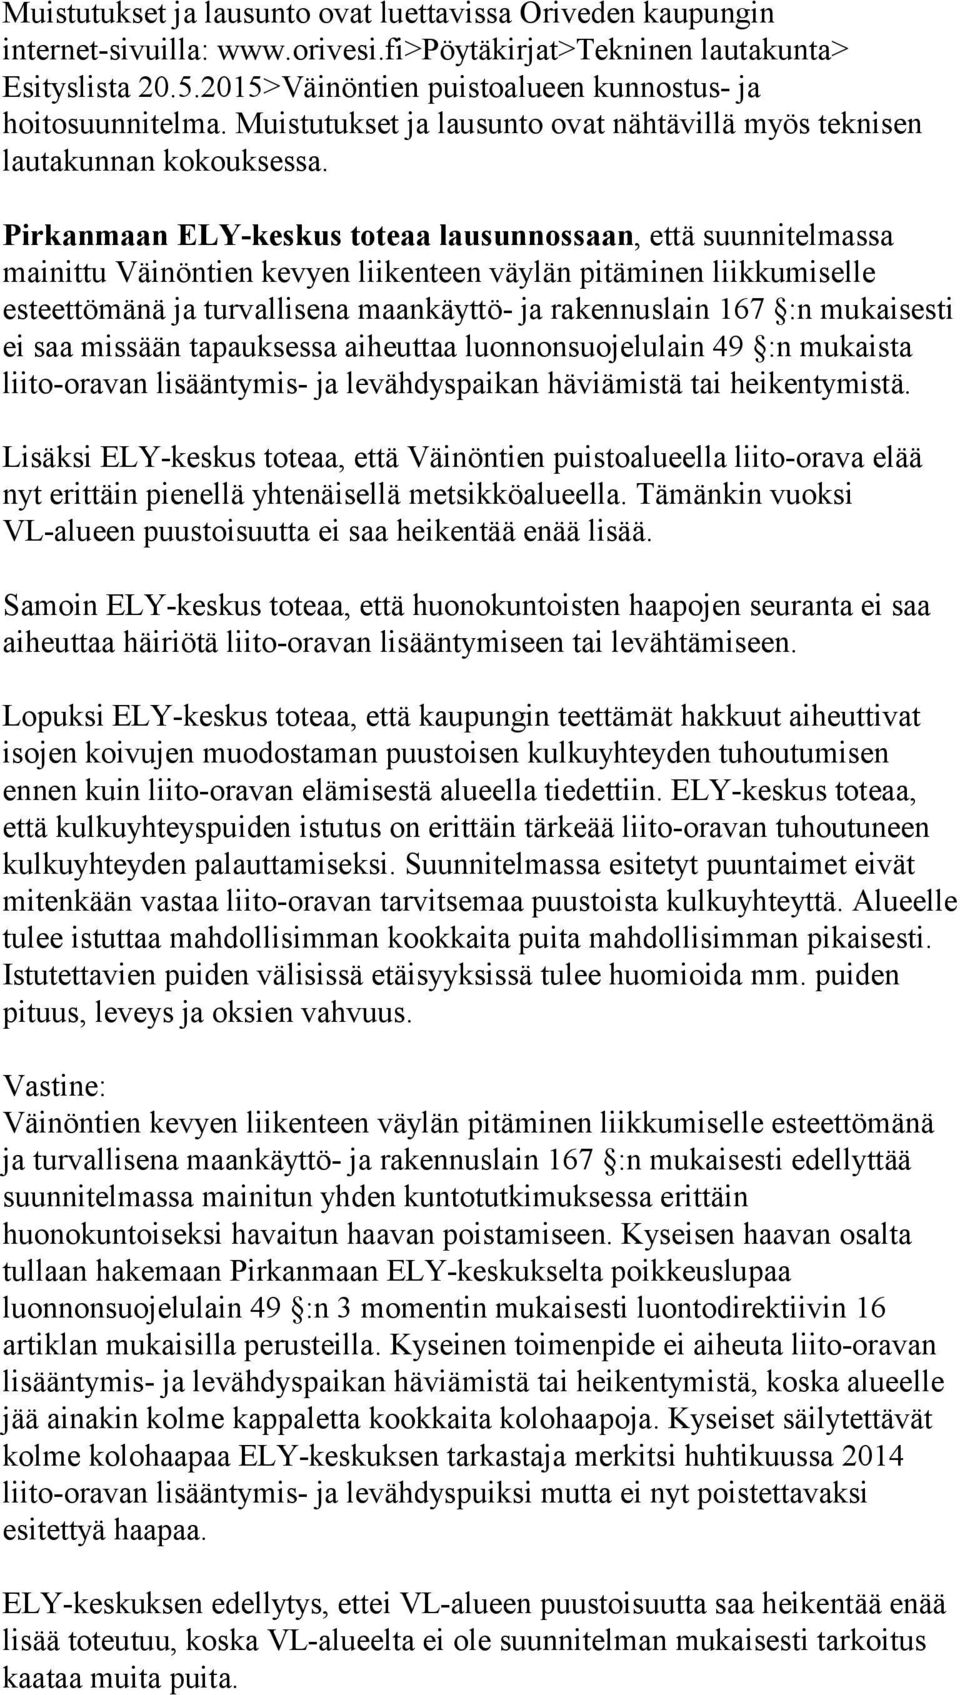 Pirkanmaan ELY-keskus toteaa lausunnossaan, että suunnitelmassa mainittu Väinöntien kevyen liikenteen väylän pitäminen liikkumiselle esteettömänä ja turvallisena maankäyttö- ja rakennuslain 167 :n